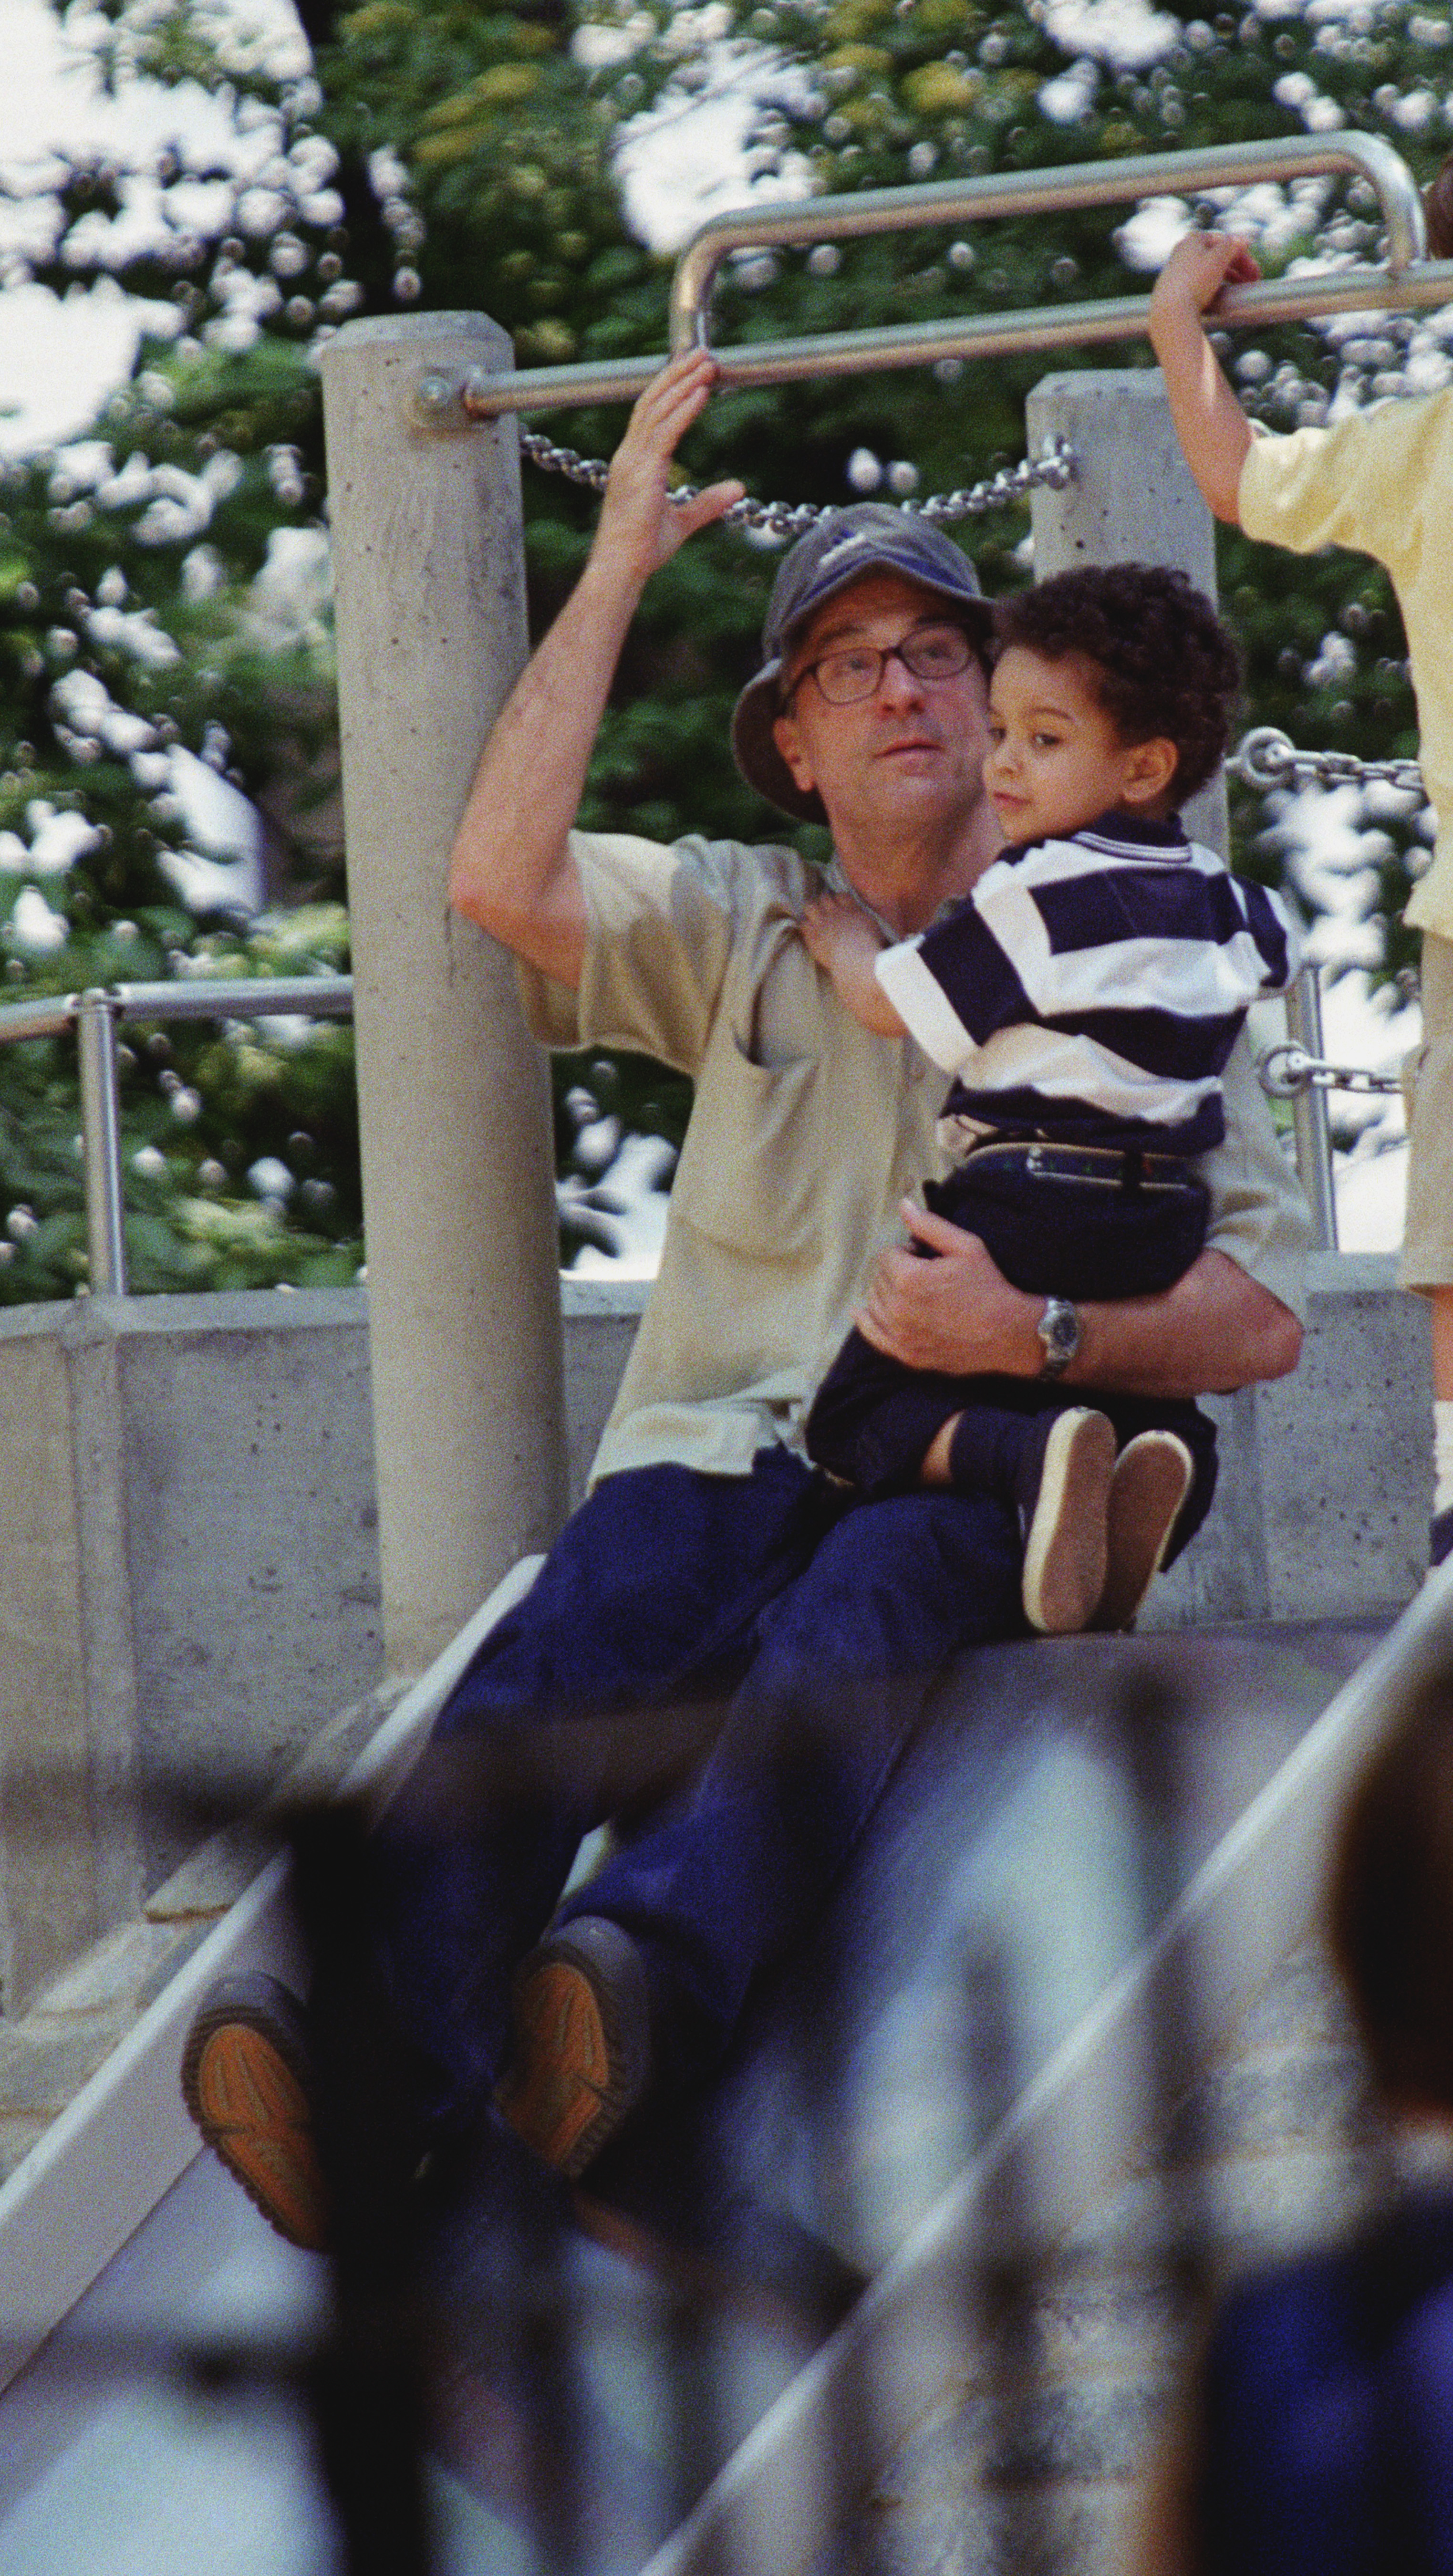 Robert De Niro y su hijo, Elliot, en Sliding Pond en Central Park, NYC | Foto: Getty Images